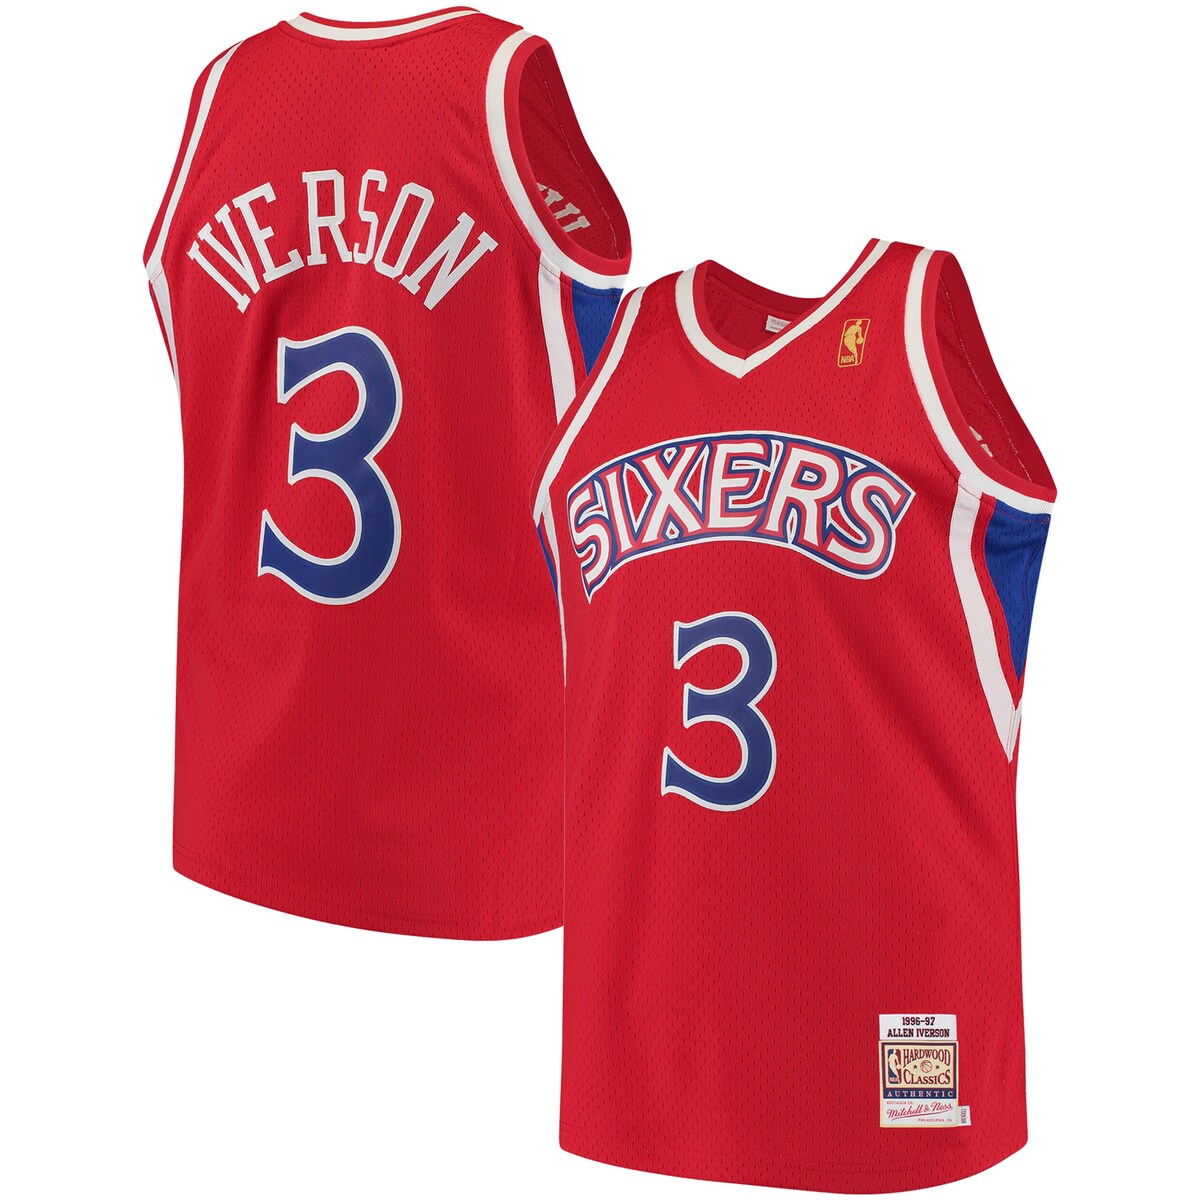 売れ筋の NBA 76ers アレン・アイバーソン オーセンティック